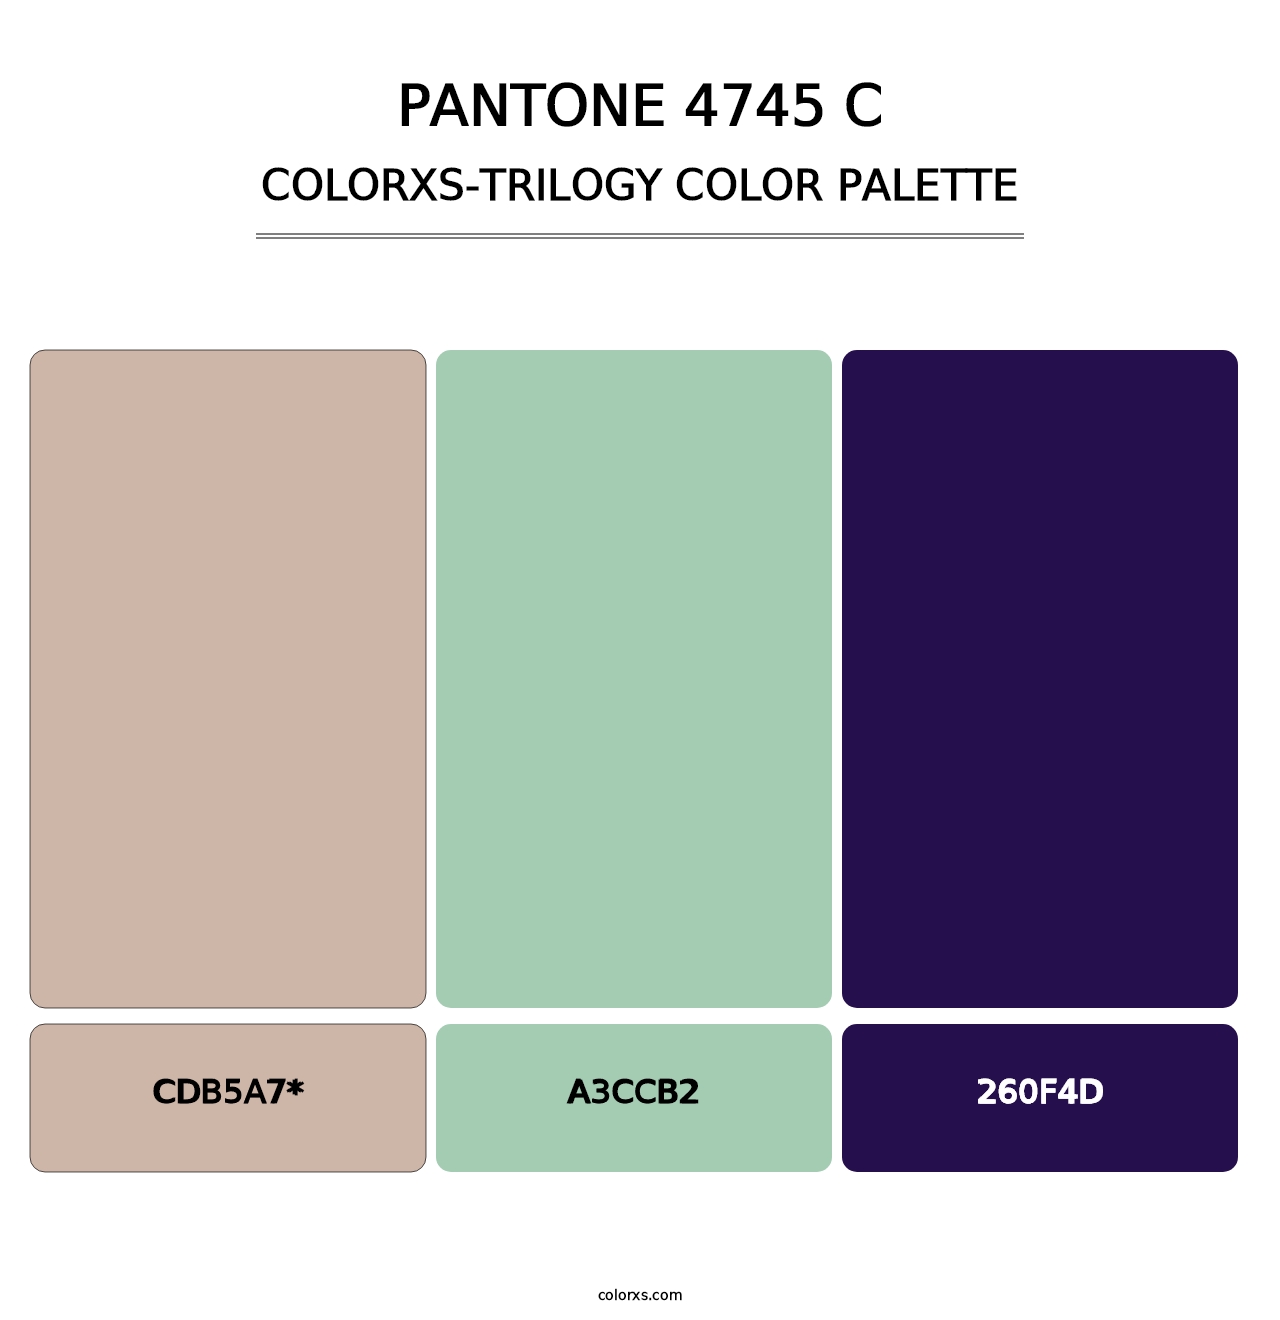 PANTONE 4745 C - Colorxs Trilogy Palette